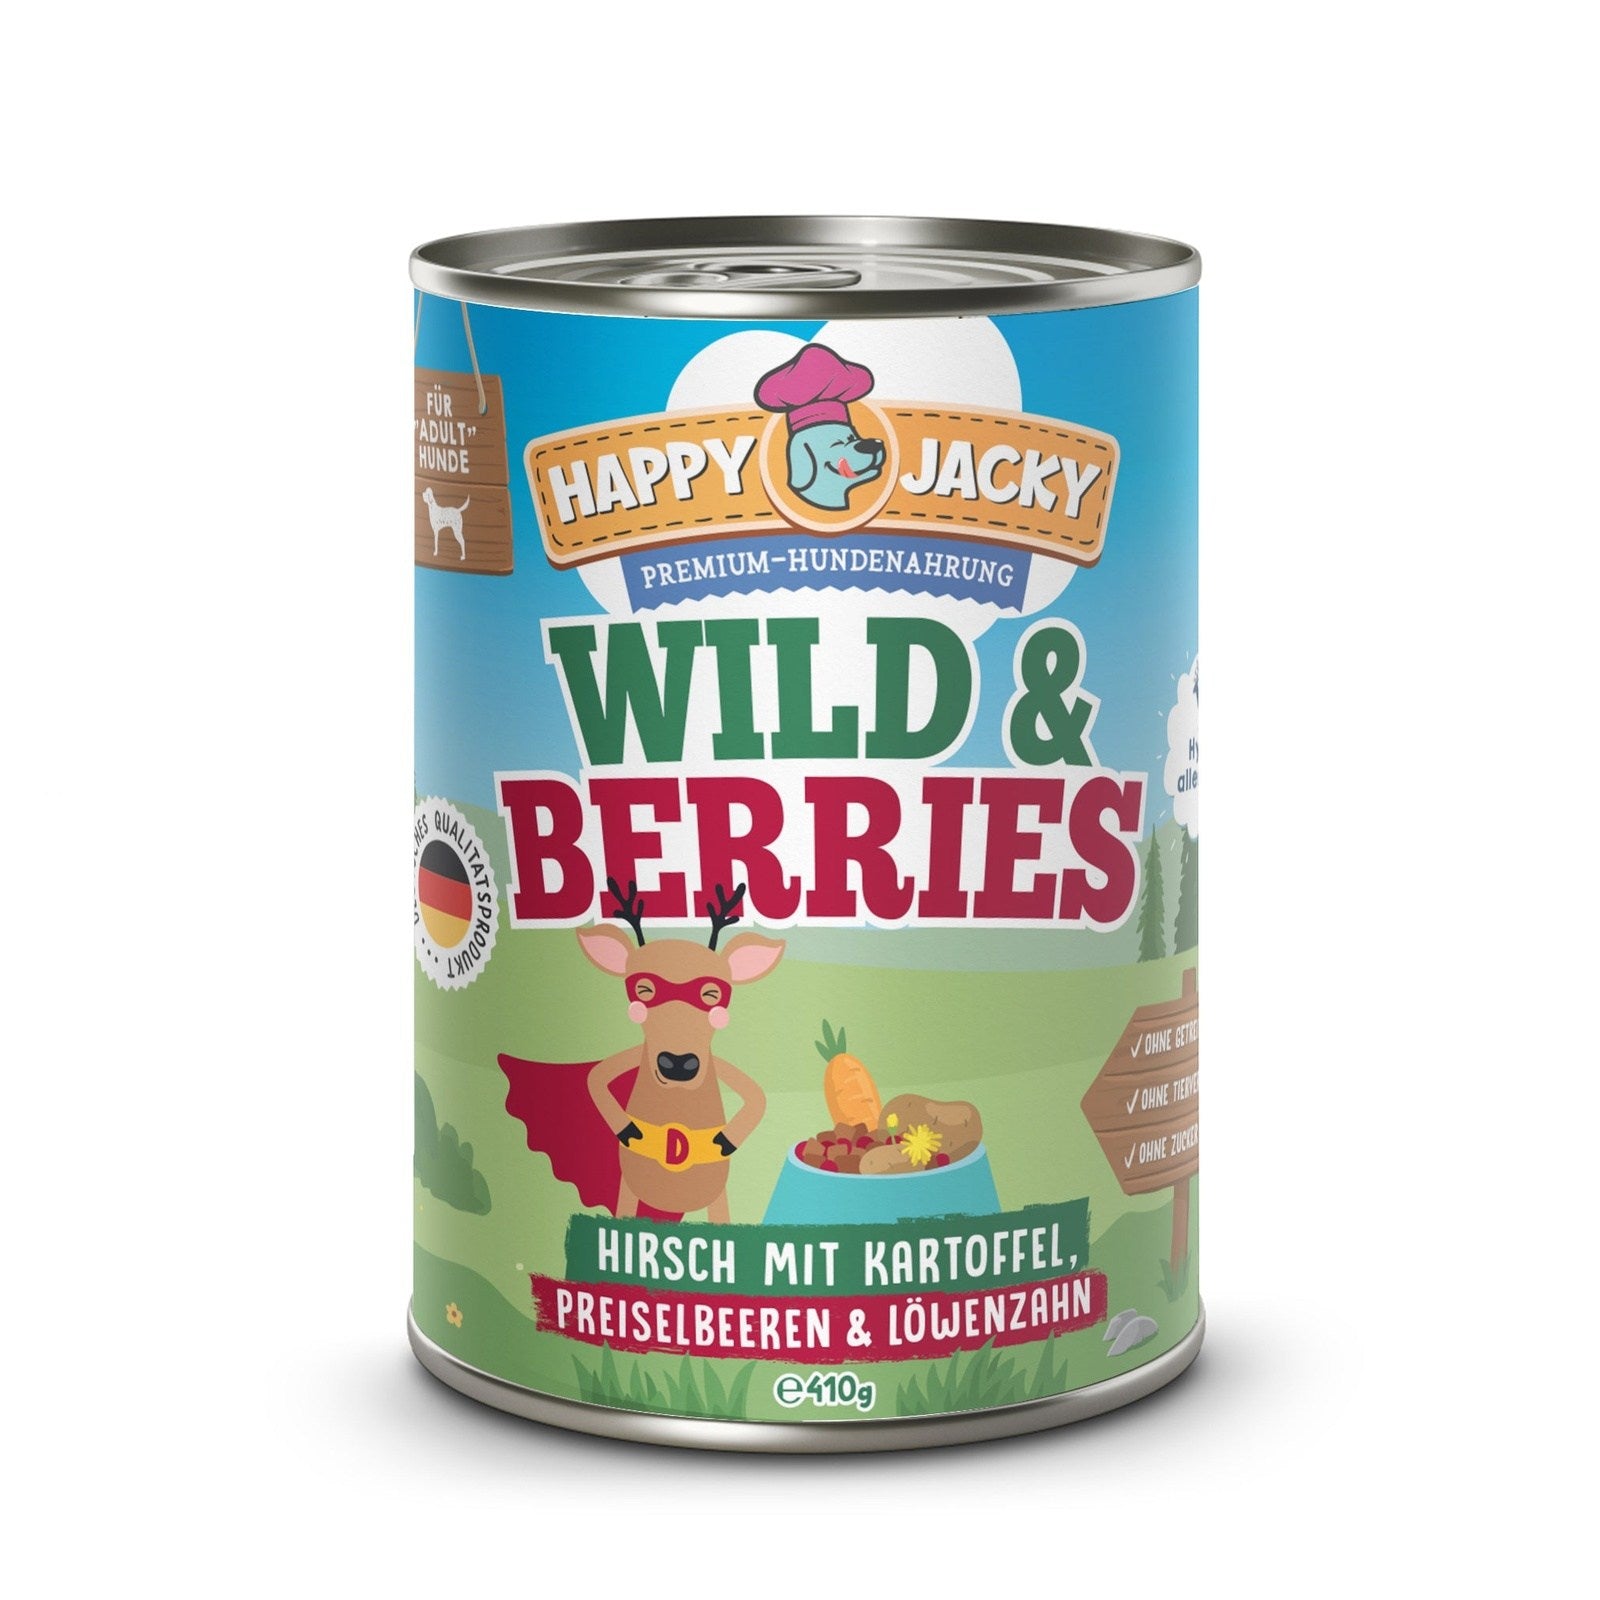 Wild & Berries - Hirsch mit Kartoffel, Preiselbeeren & Löwenzahn HAPPY JACKY